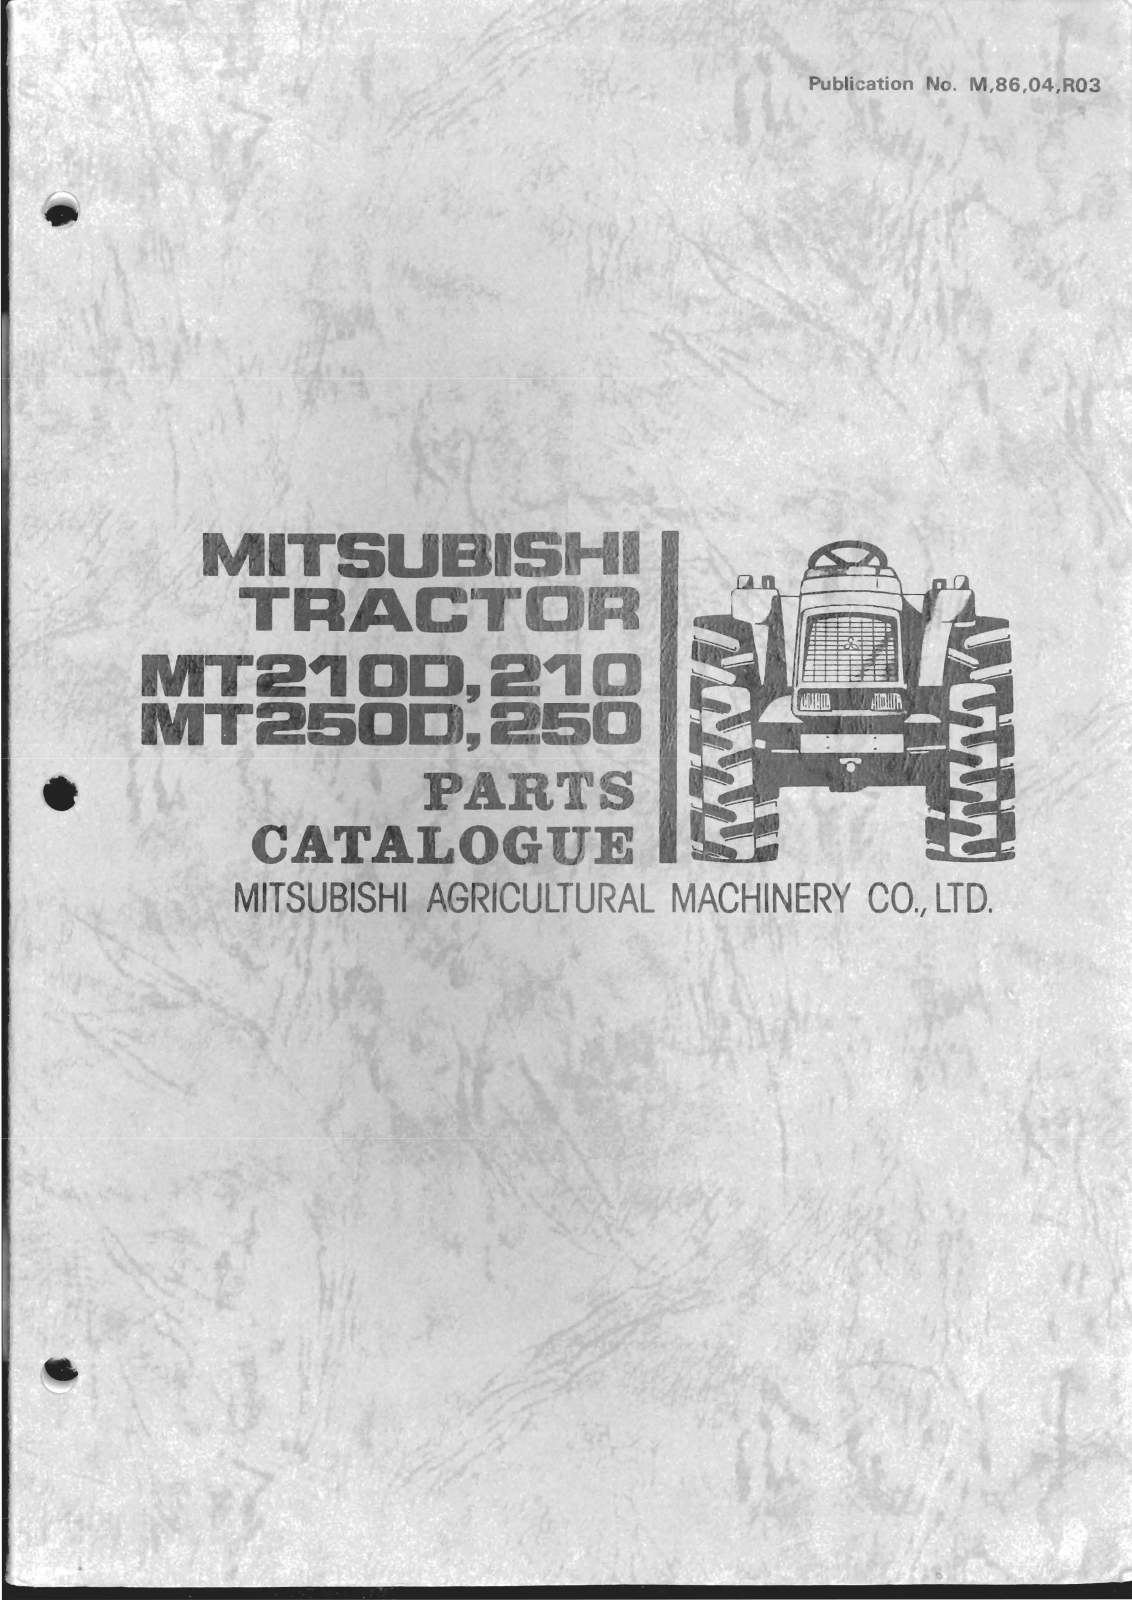 Mitsubishi MT210D, MT2100, MT210, MT250D, MT250 Parts Catalog